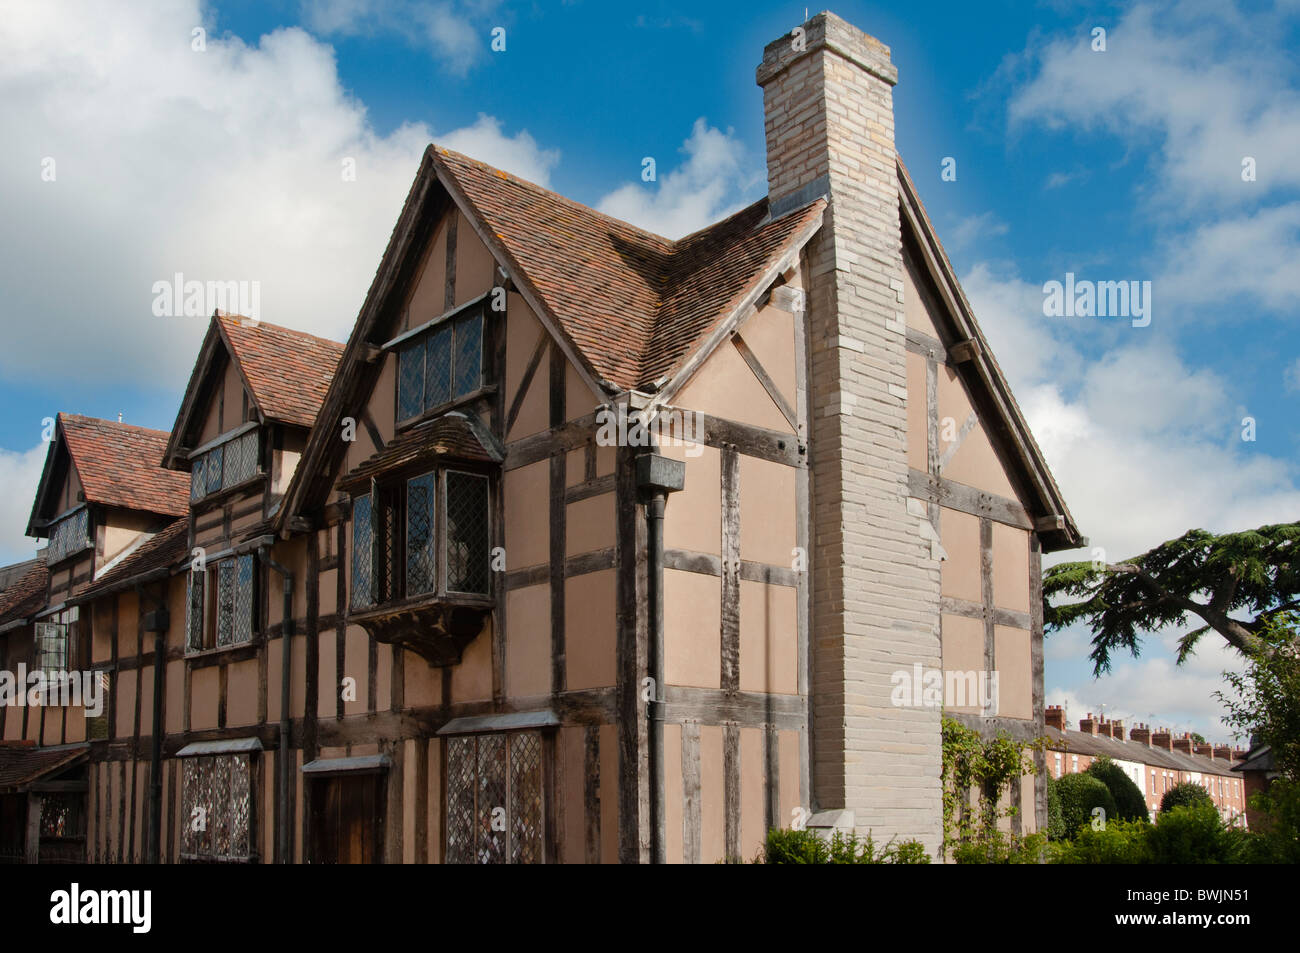 Lieu de naissance de William Shakespeare à Stratford upon Avon, Angleterre. Banque D'Images